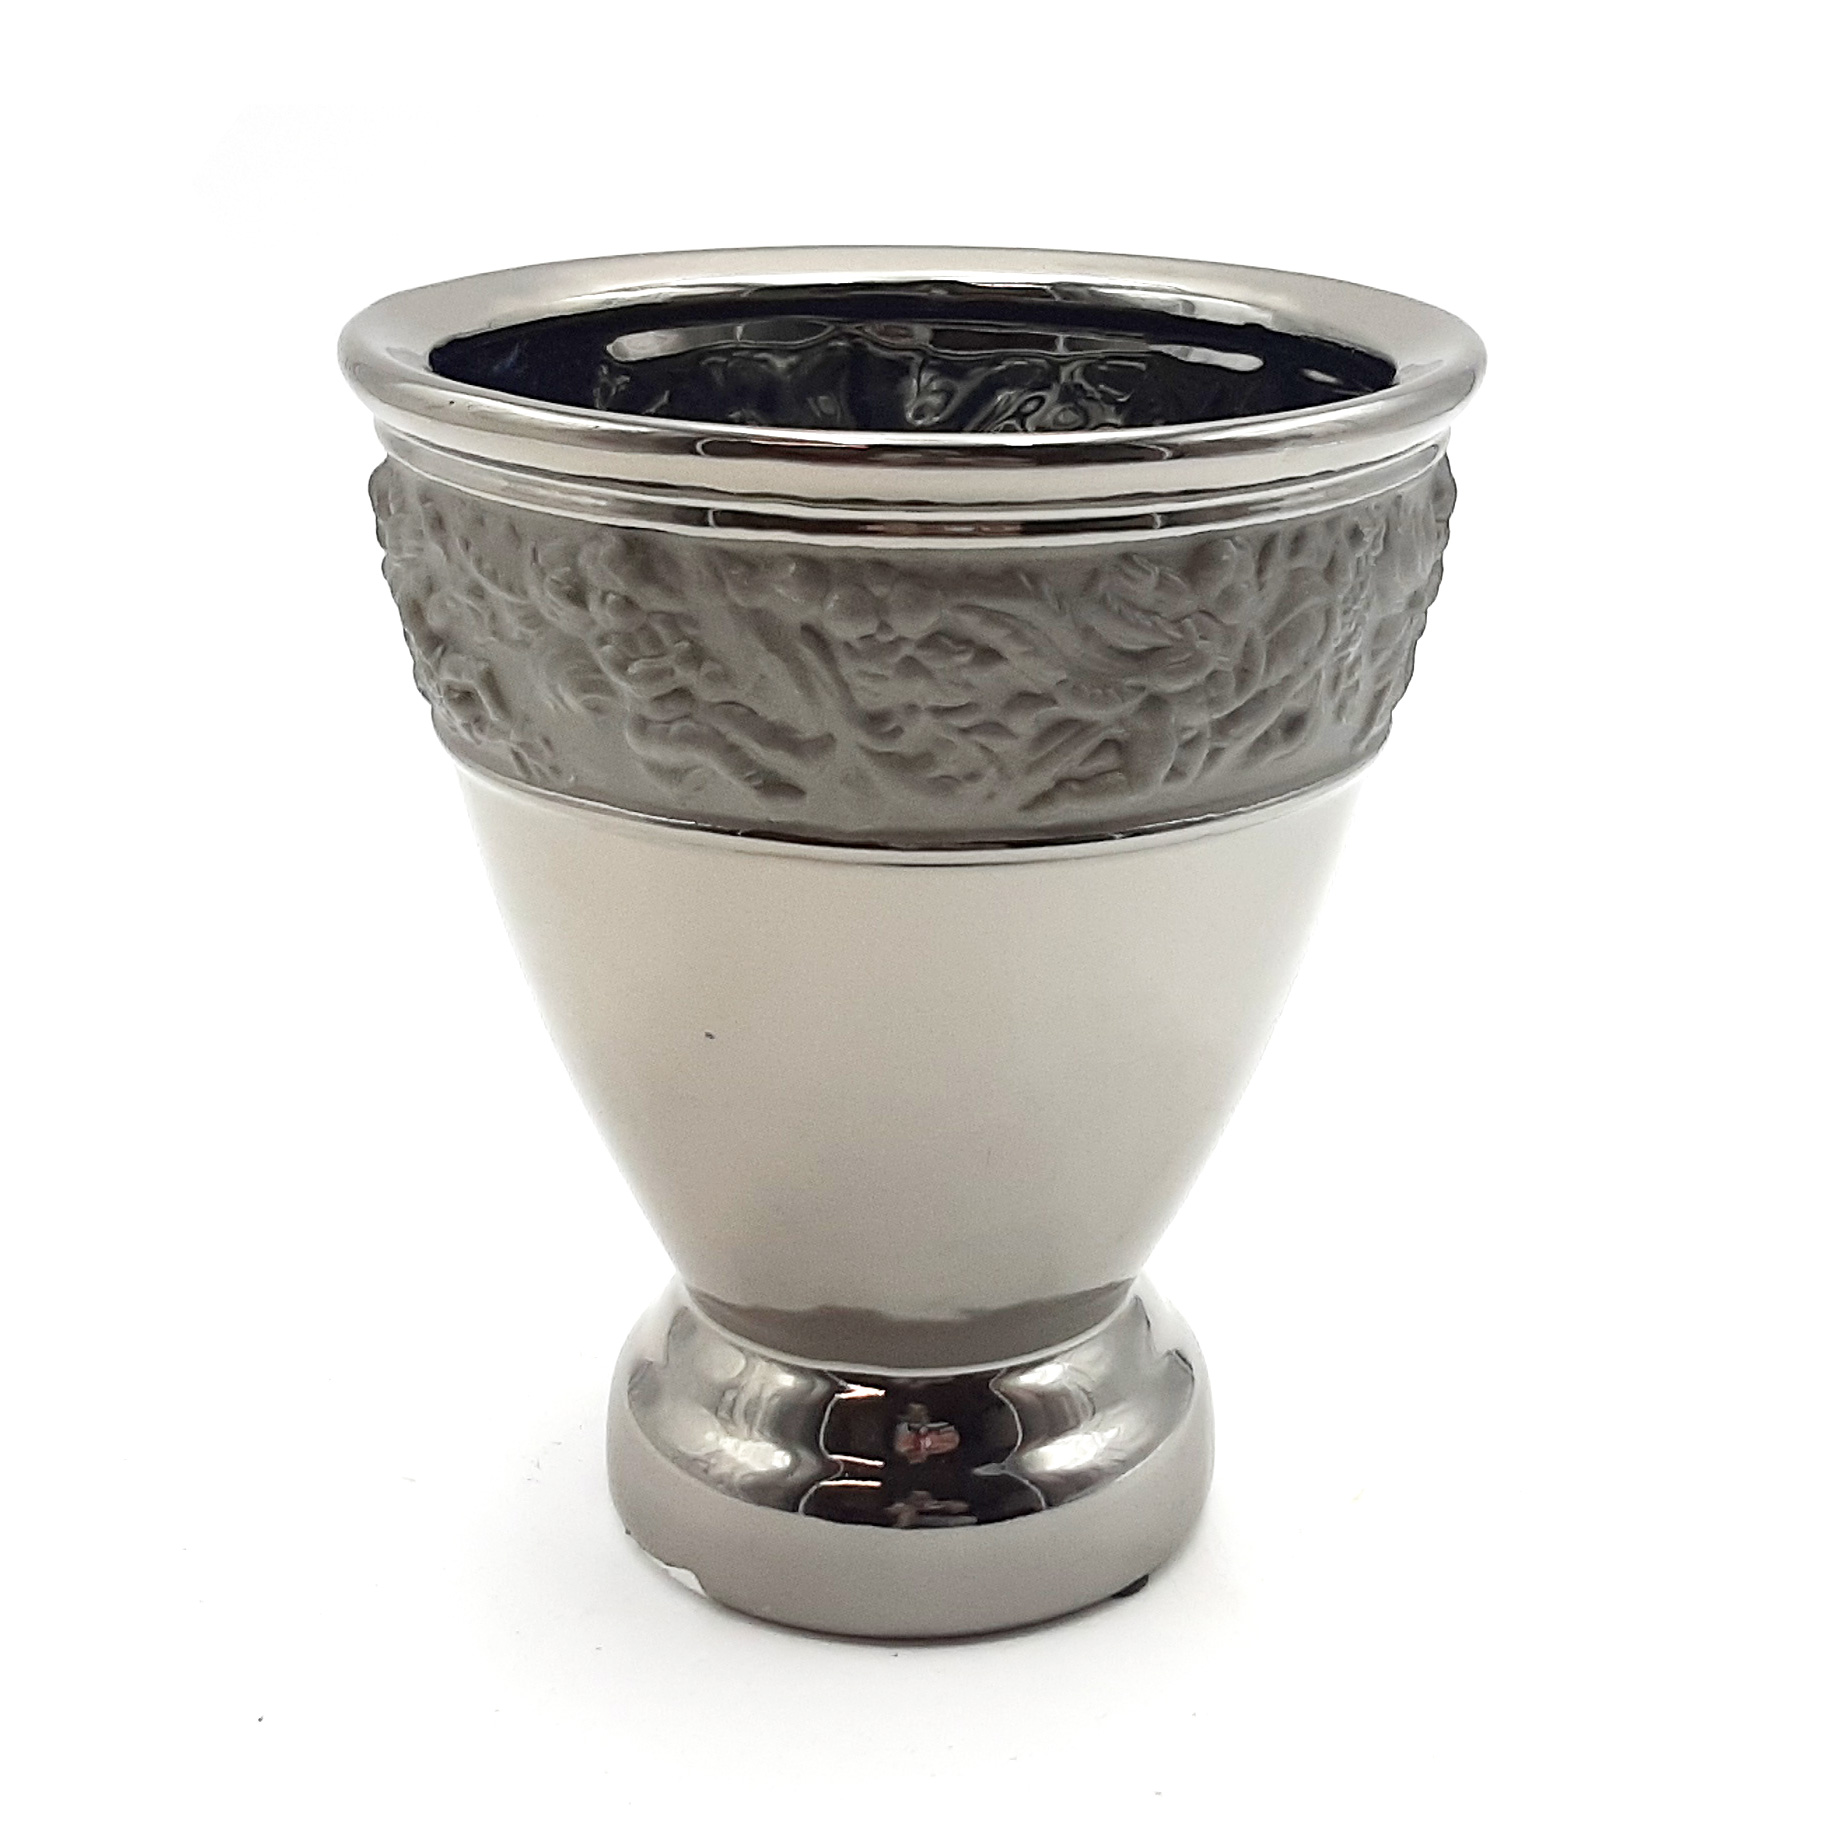 Vaso in ceramica argento anticato con fascia in rilievo